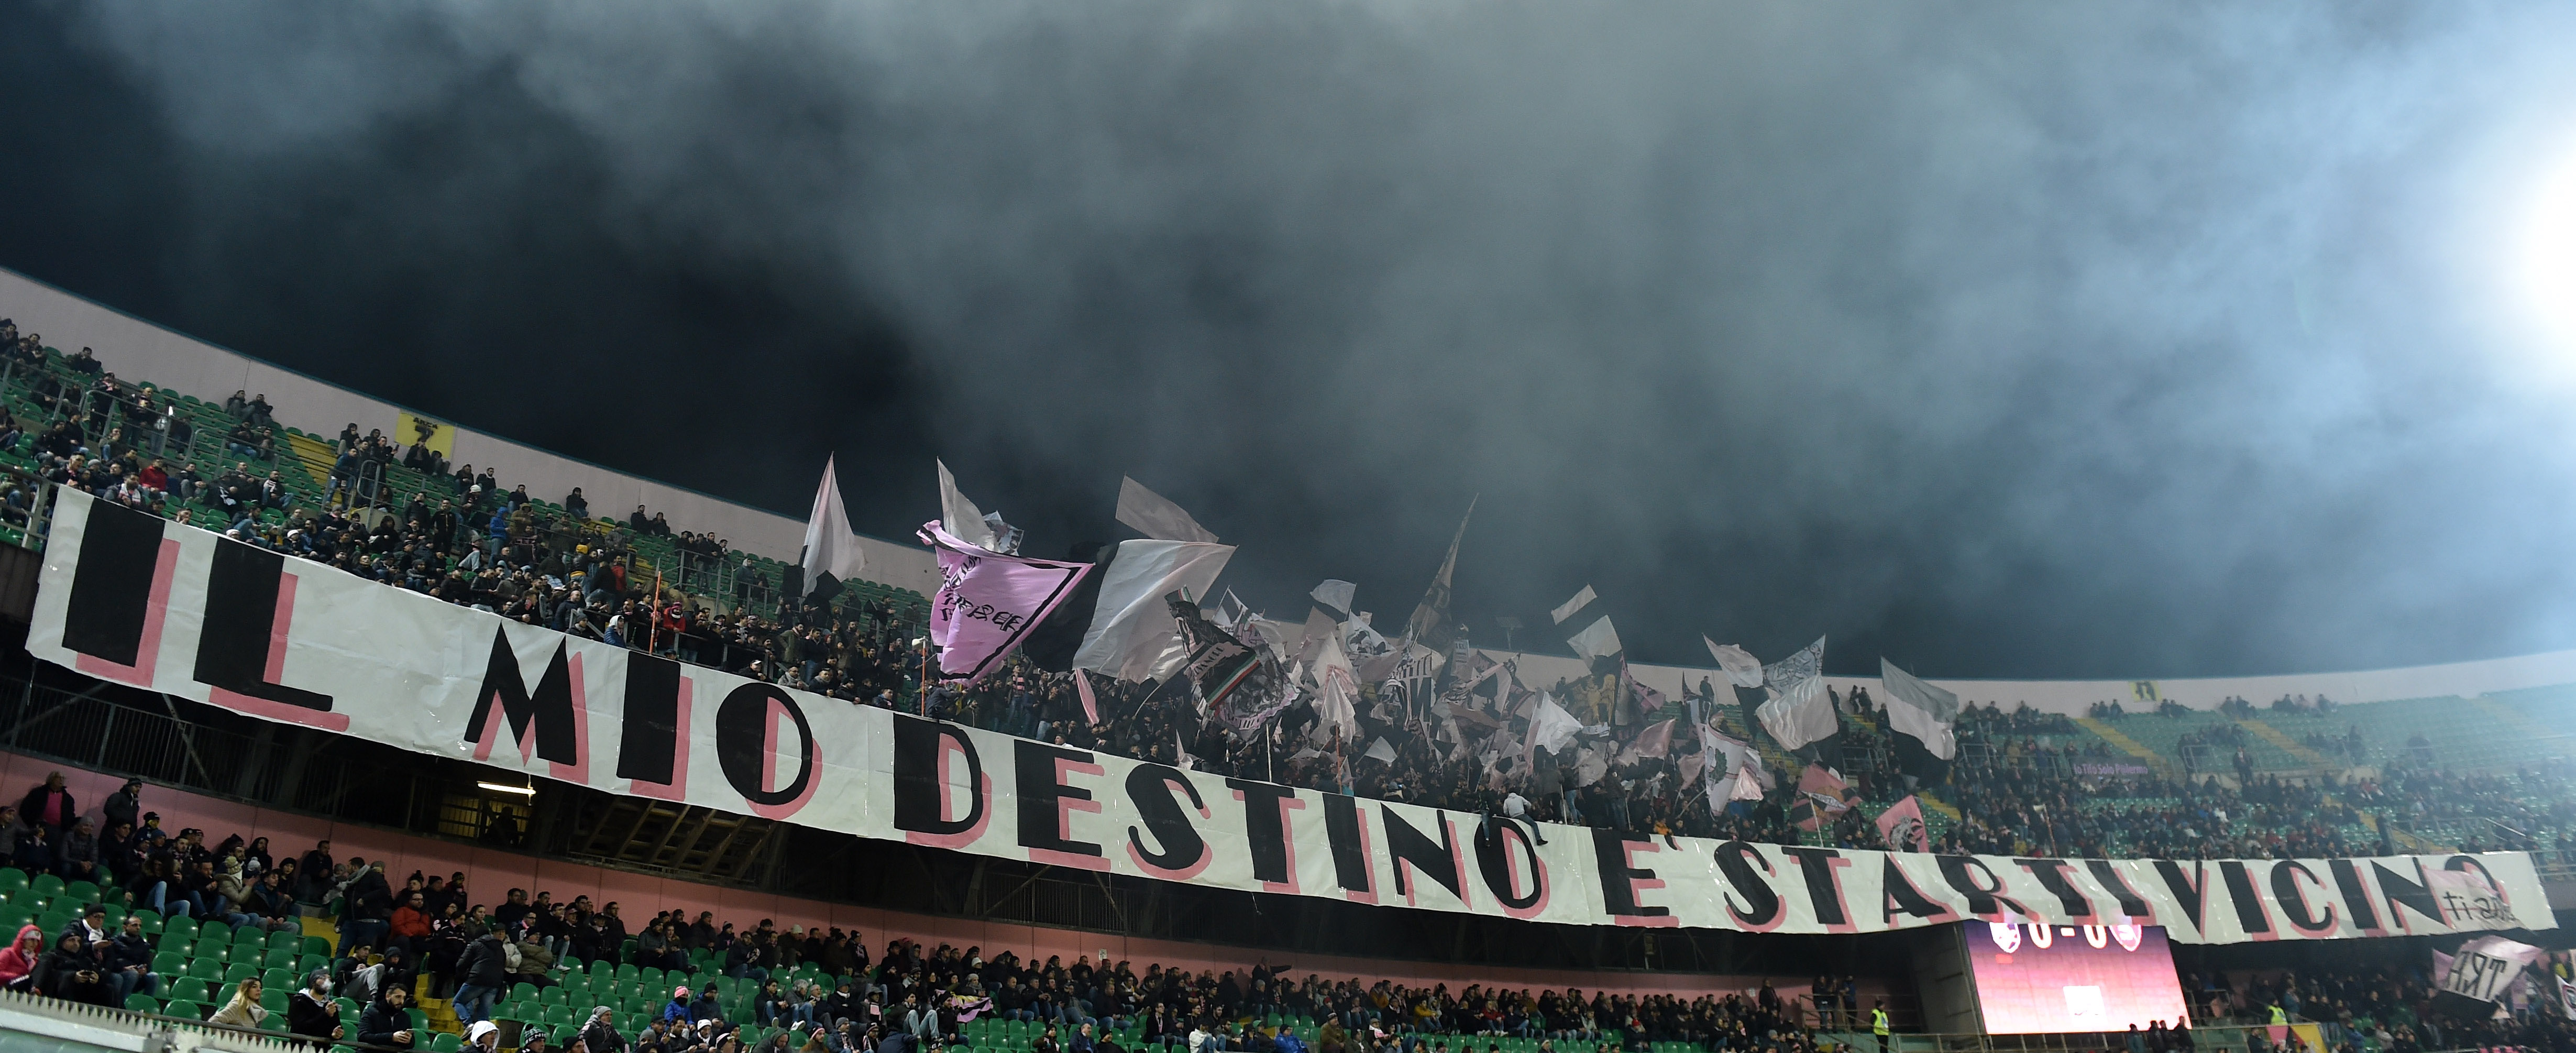 Nasce Palermo Football Club: capitale sociale e socio - i dettagli